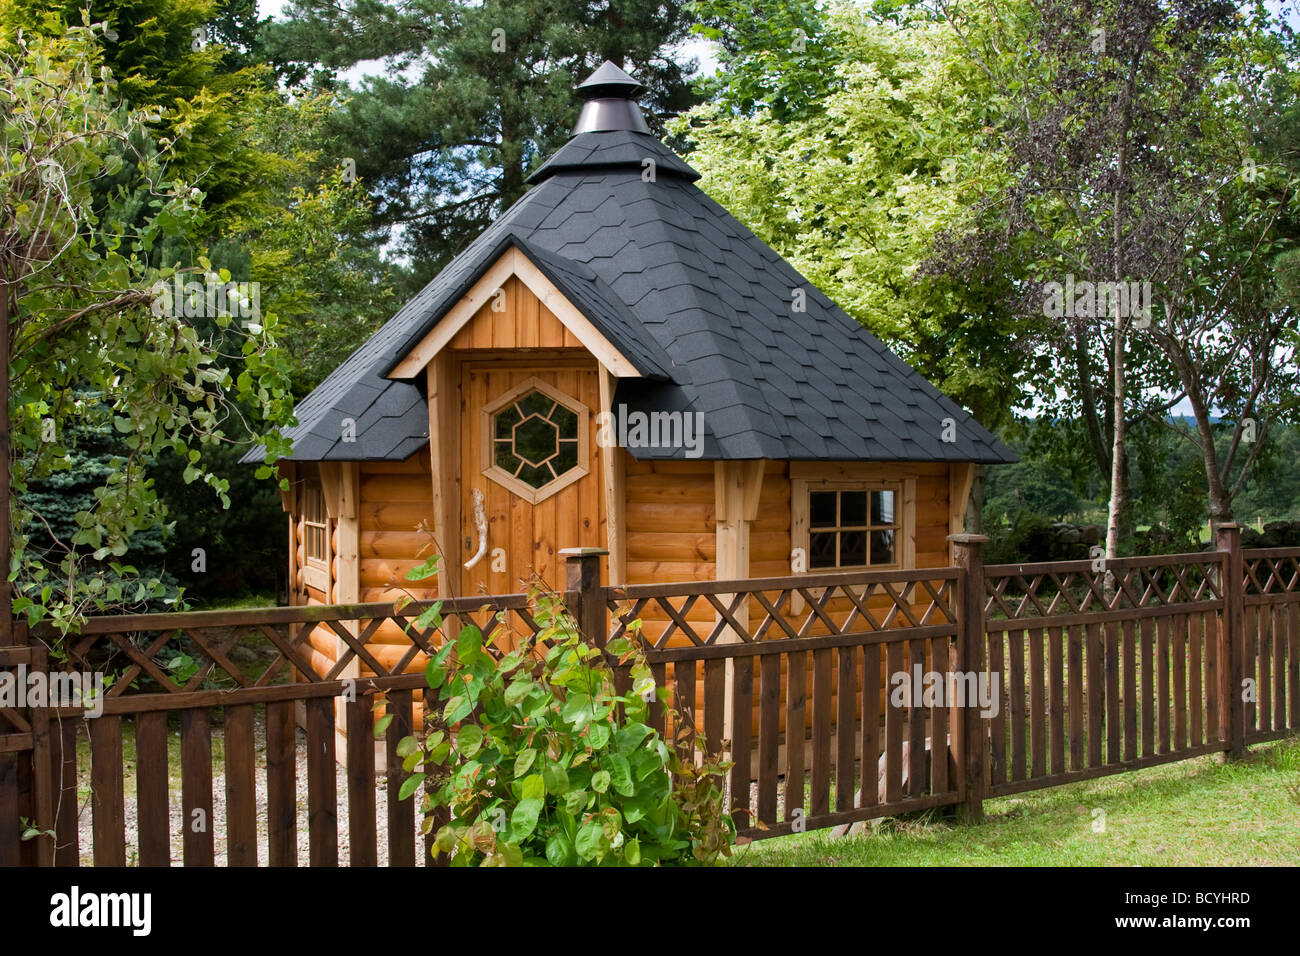 Hexagonal wooden felted Garden shed at Deeside Log Cabins, Aberdeenshire, Scotland, UK Stock Photo